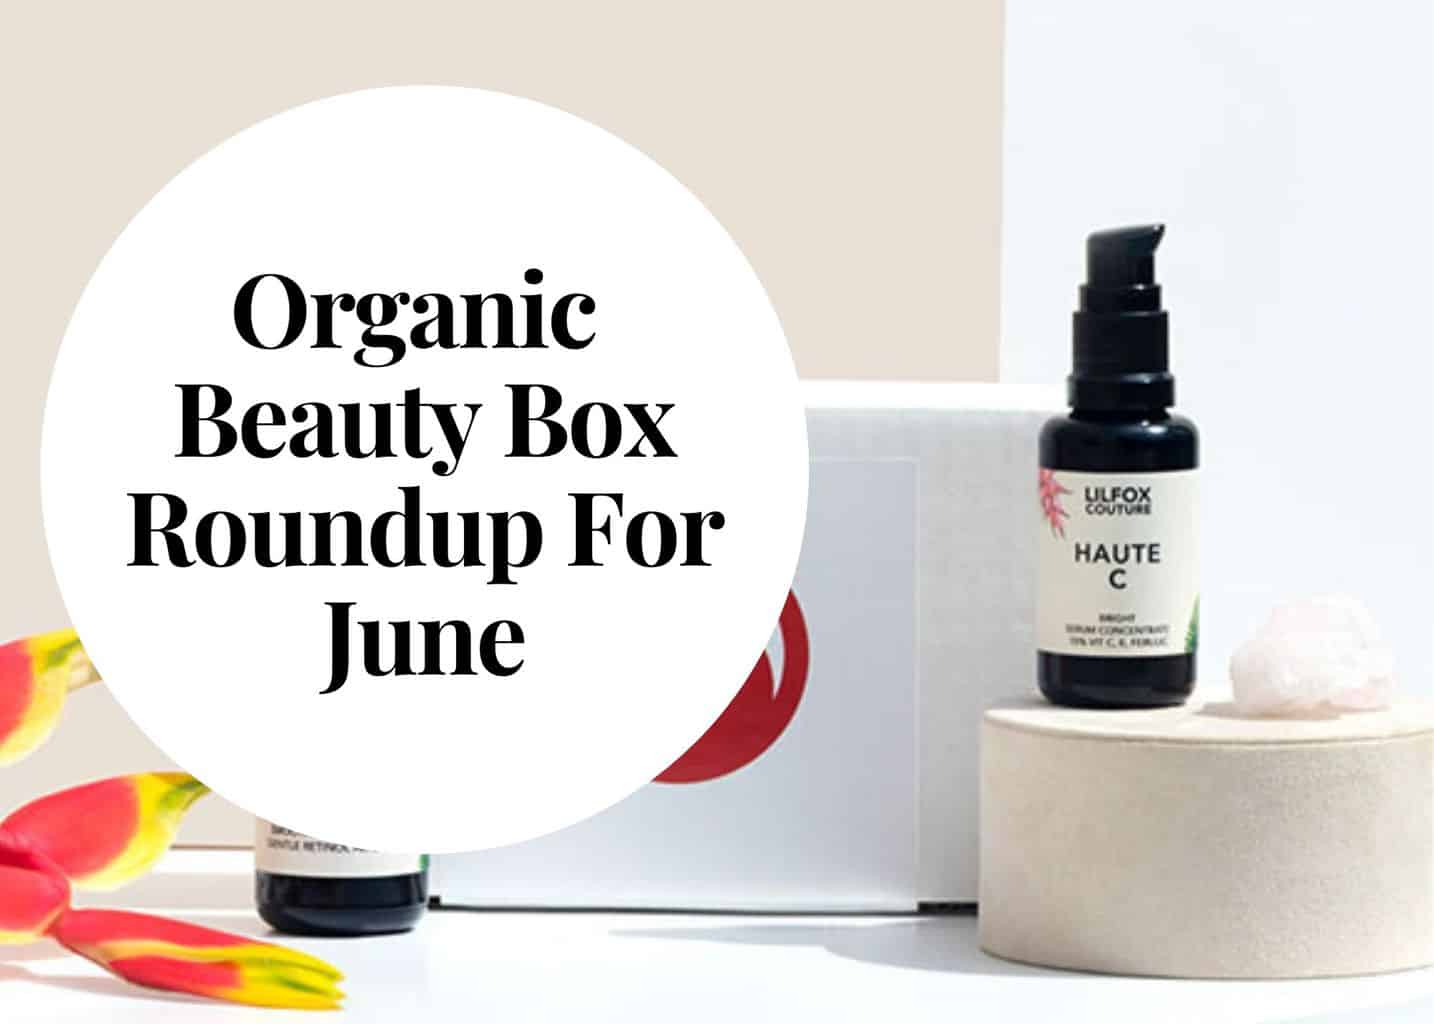 Organic beauty box roundup